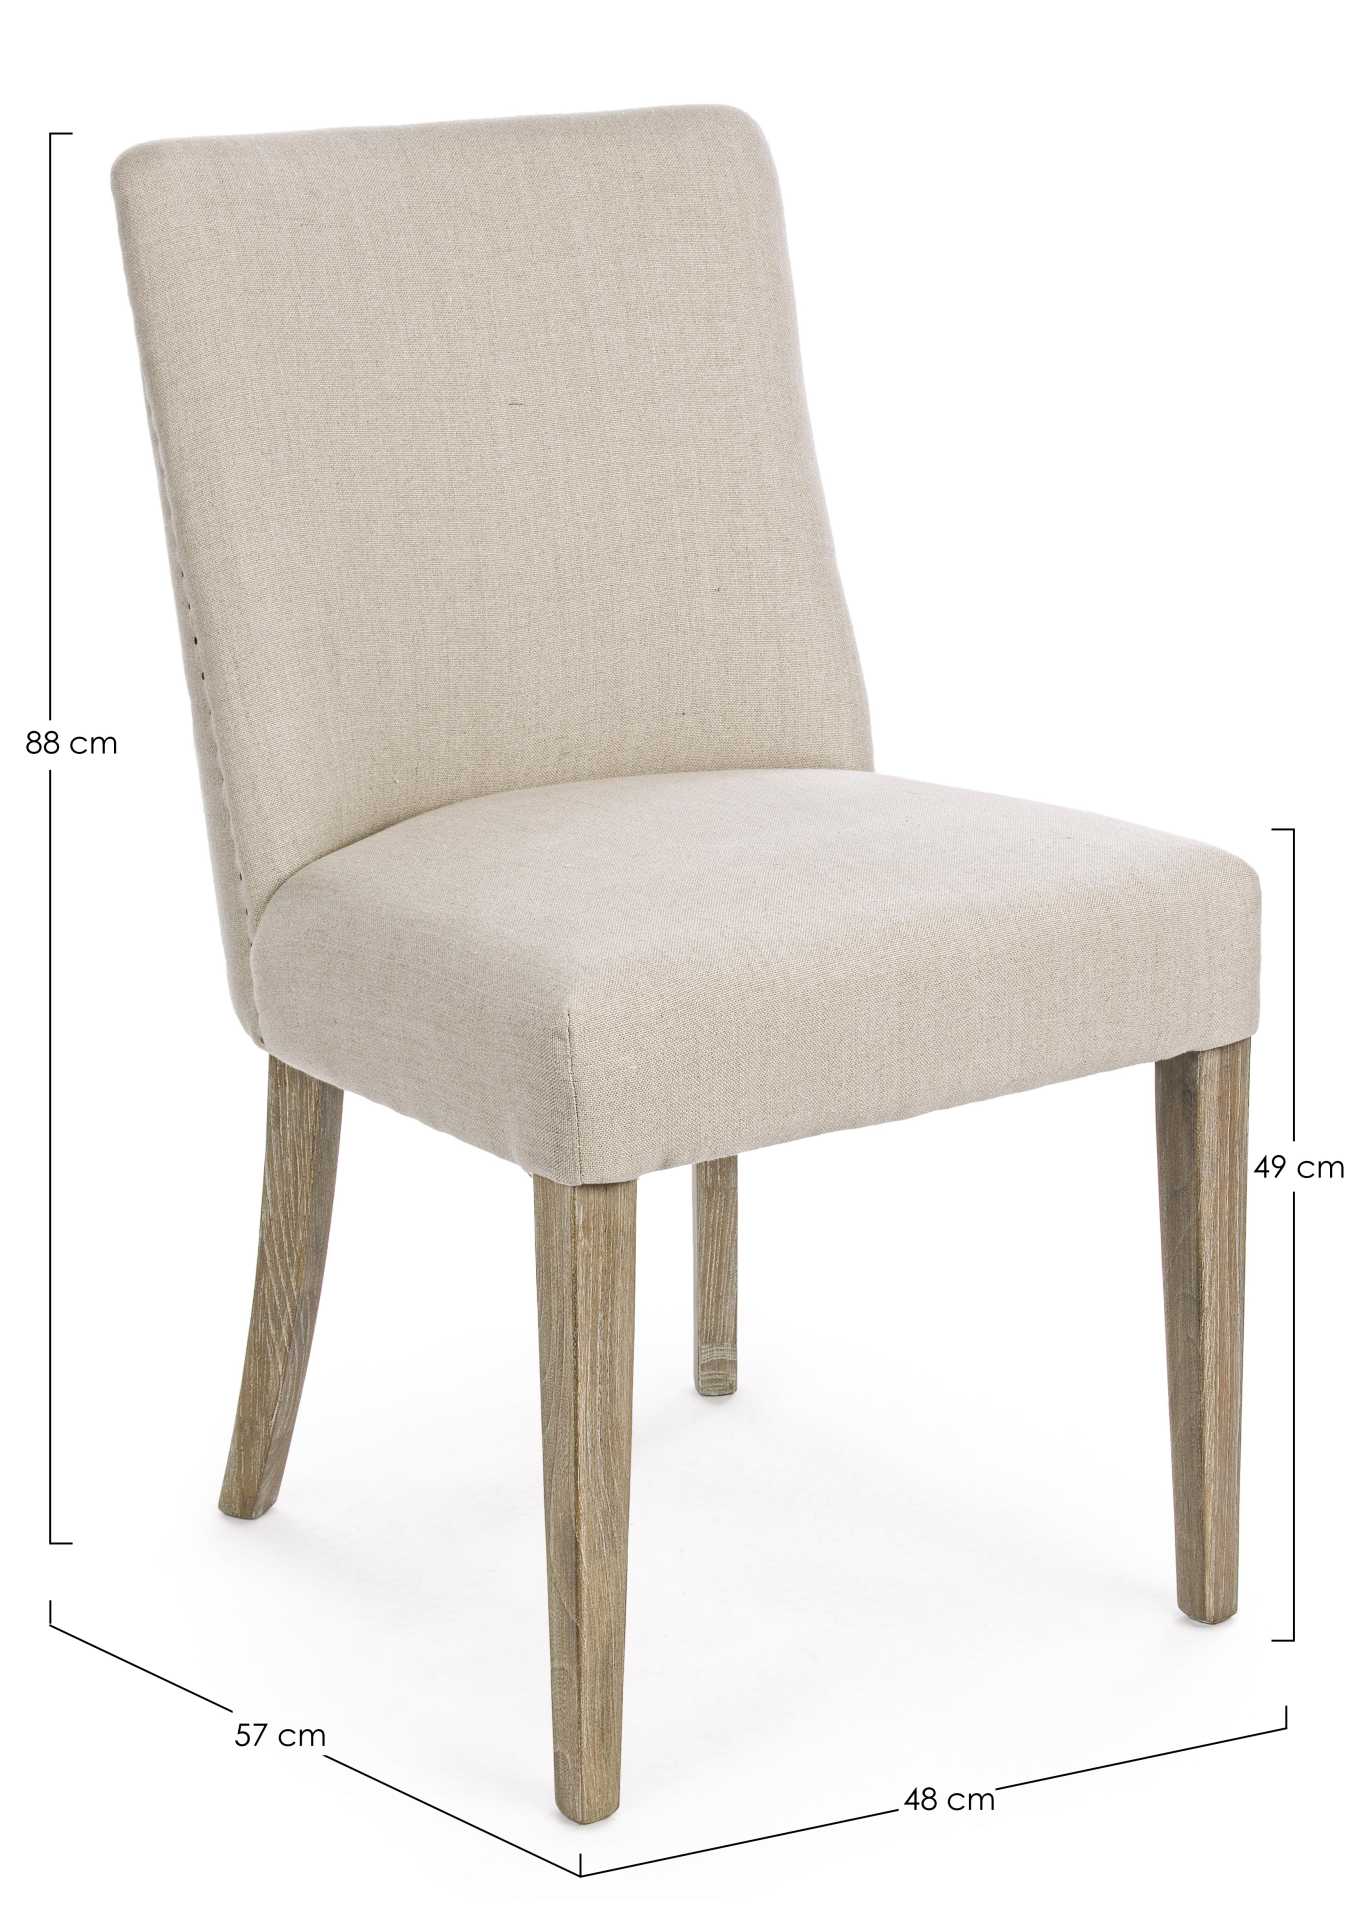 Der Esszimmerstuhl Beatriz überzeugt mit seinem klassischem Design.gefertigt wurde der Stuhl aus einem Leinen-Bezug, welcher einen natürlichen Farbton besitzt. Das Gestell ist aus Eichenholz und ist natürlichen gehalten. Die Sitzhöhe beträgt 49 cm.